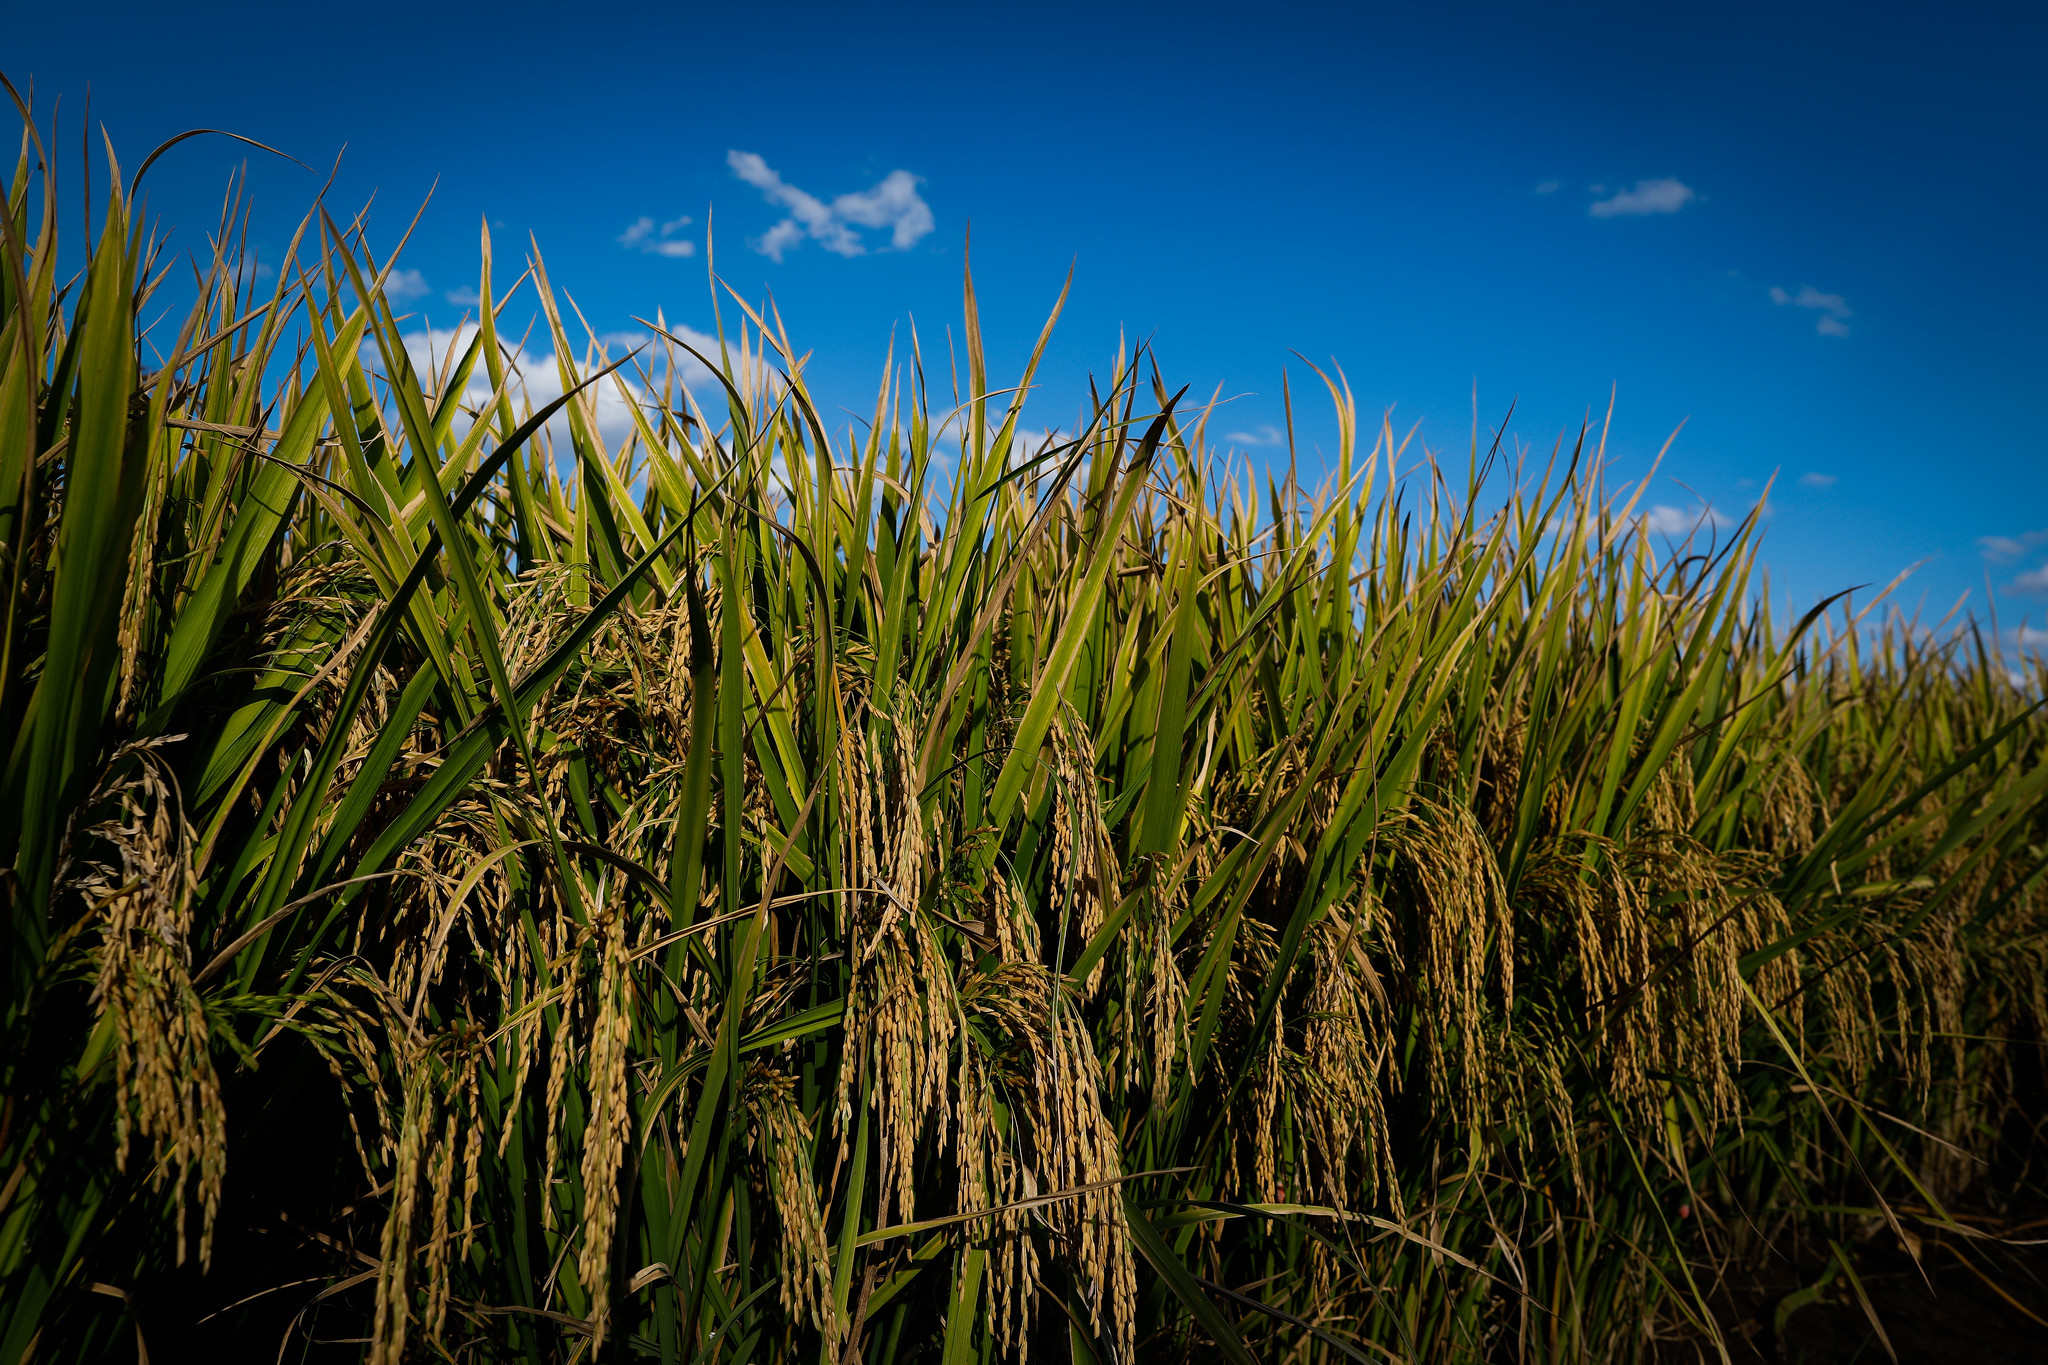 Os preços seguem firmes, mesmo registrando aumentos de menor intensidade nos últimos dias, resultado da redução da oferta de arroz no Brasil, de modo geral. - Foto: Wenderson Araujo/CNA